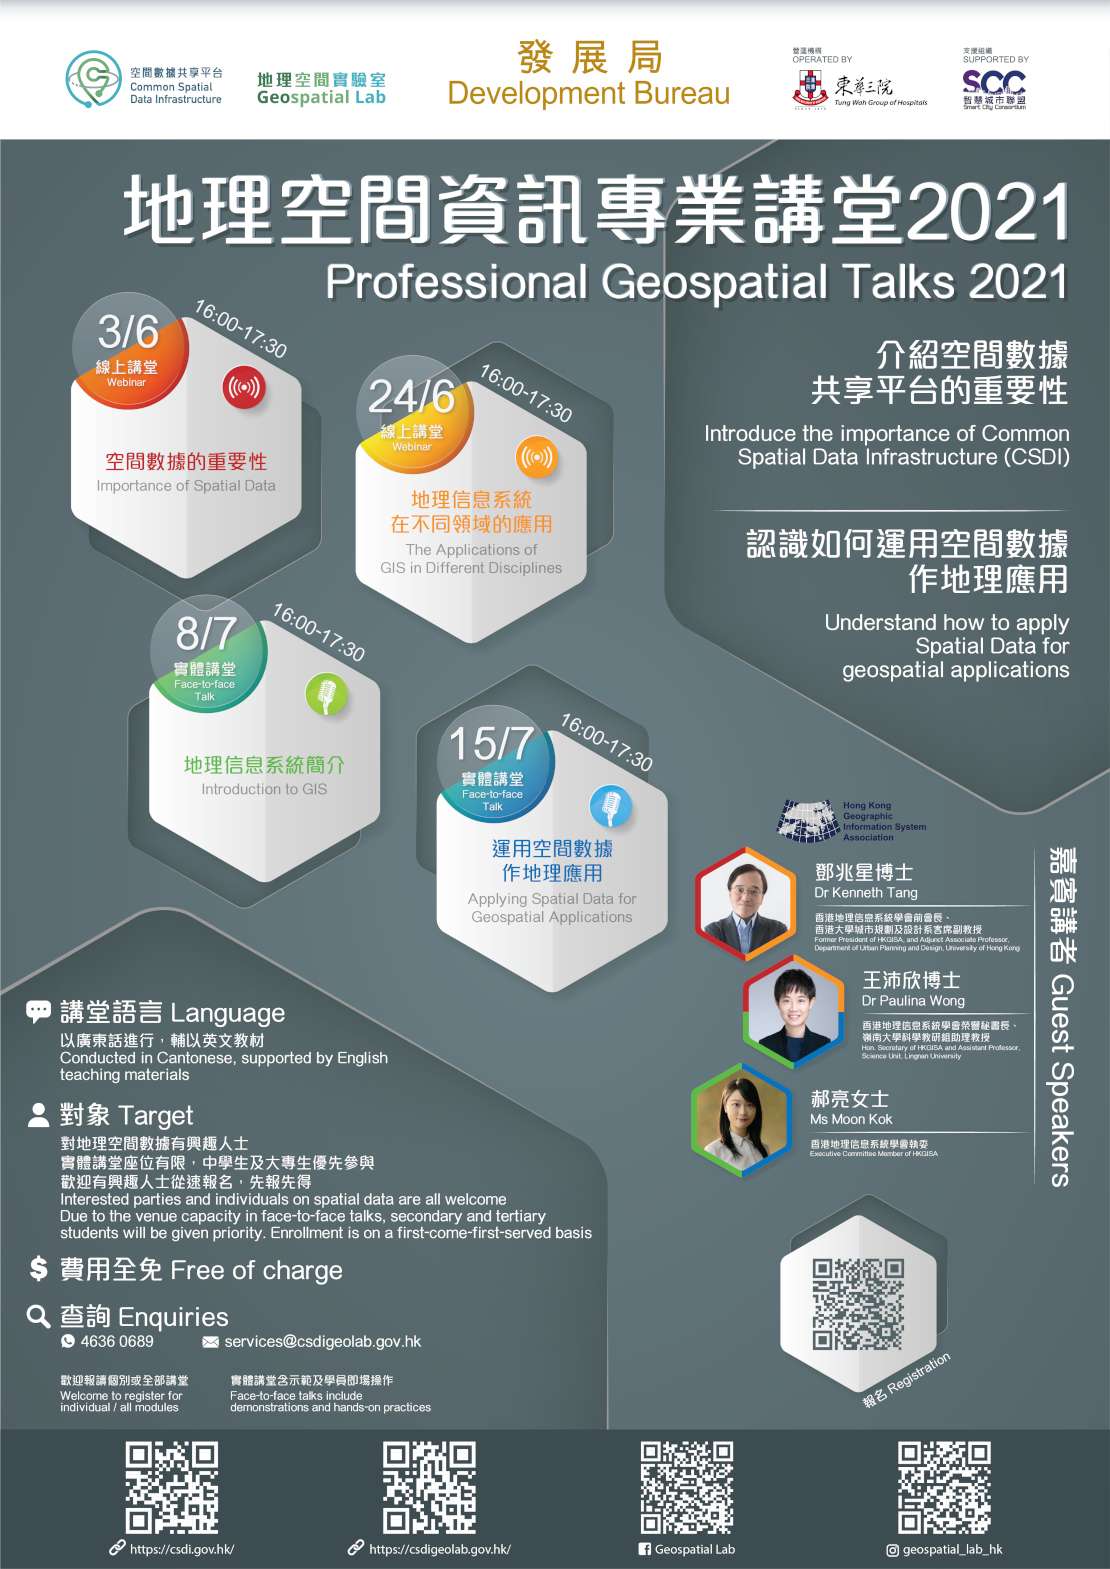 Professional Geospatial Talks (4 modules)